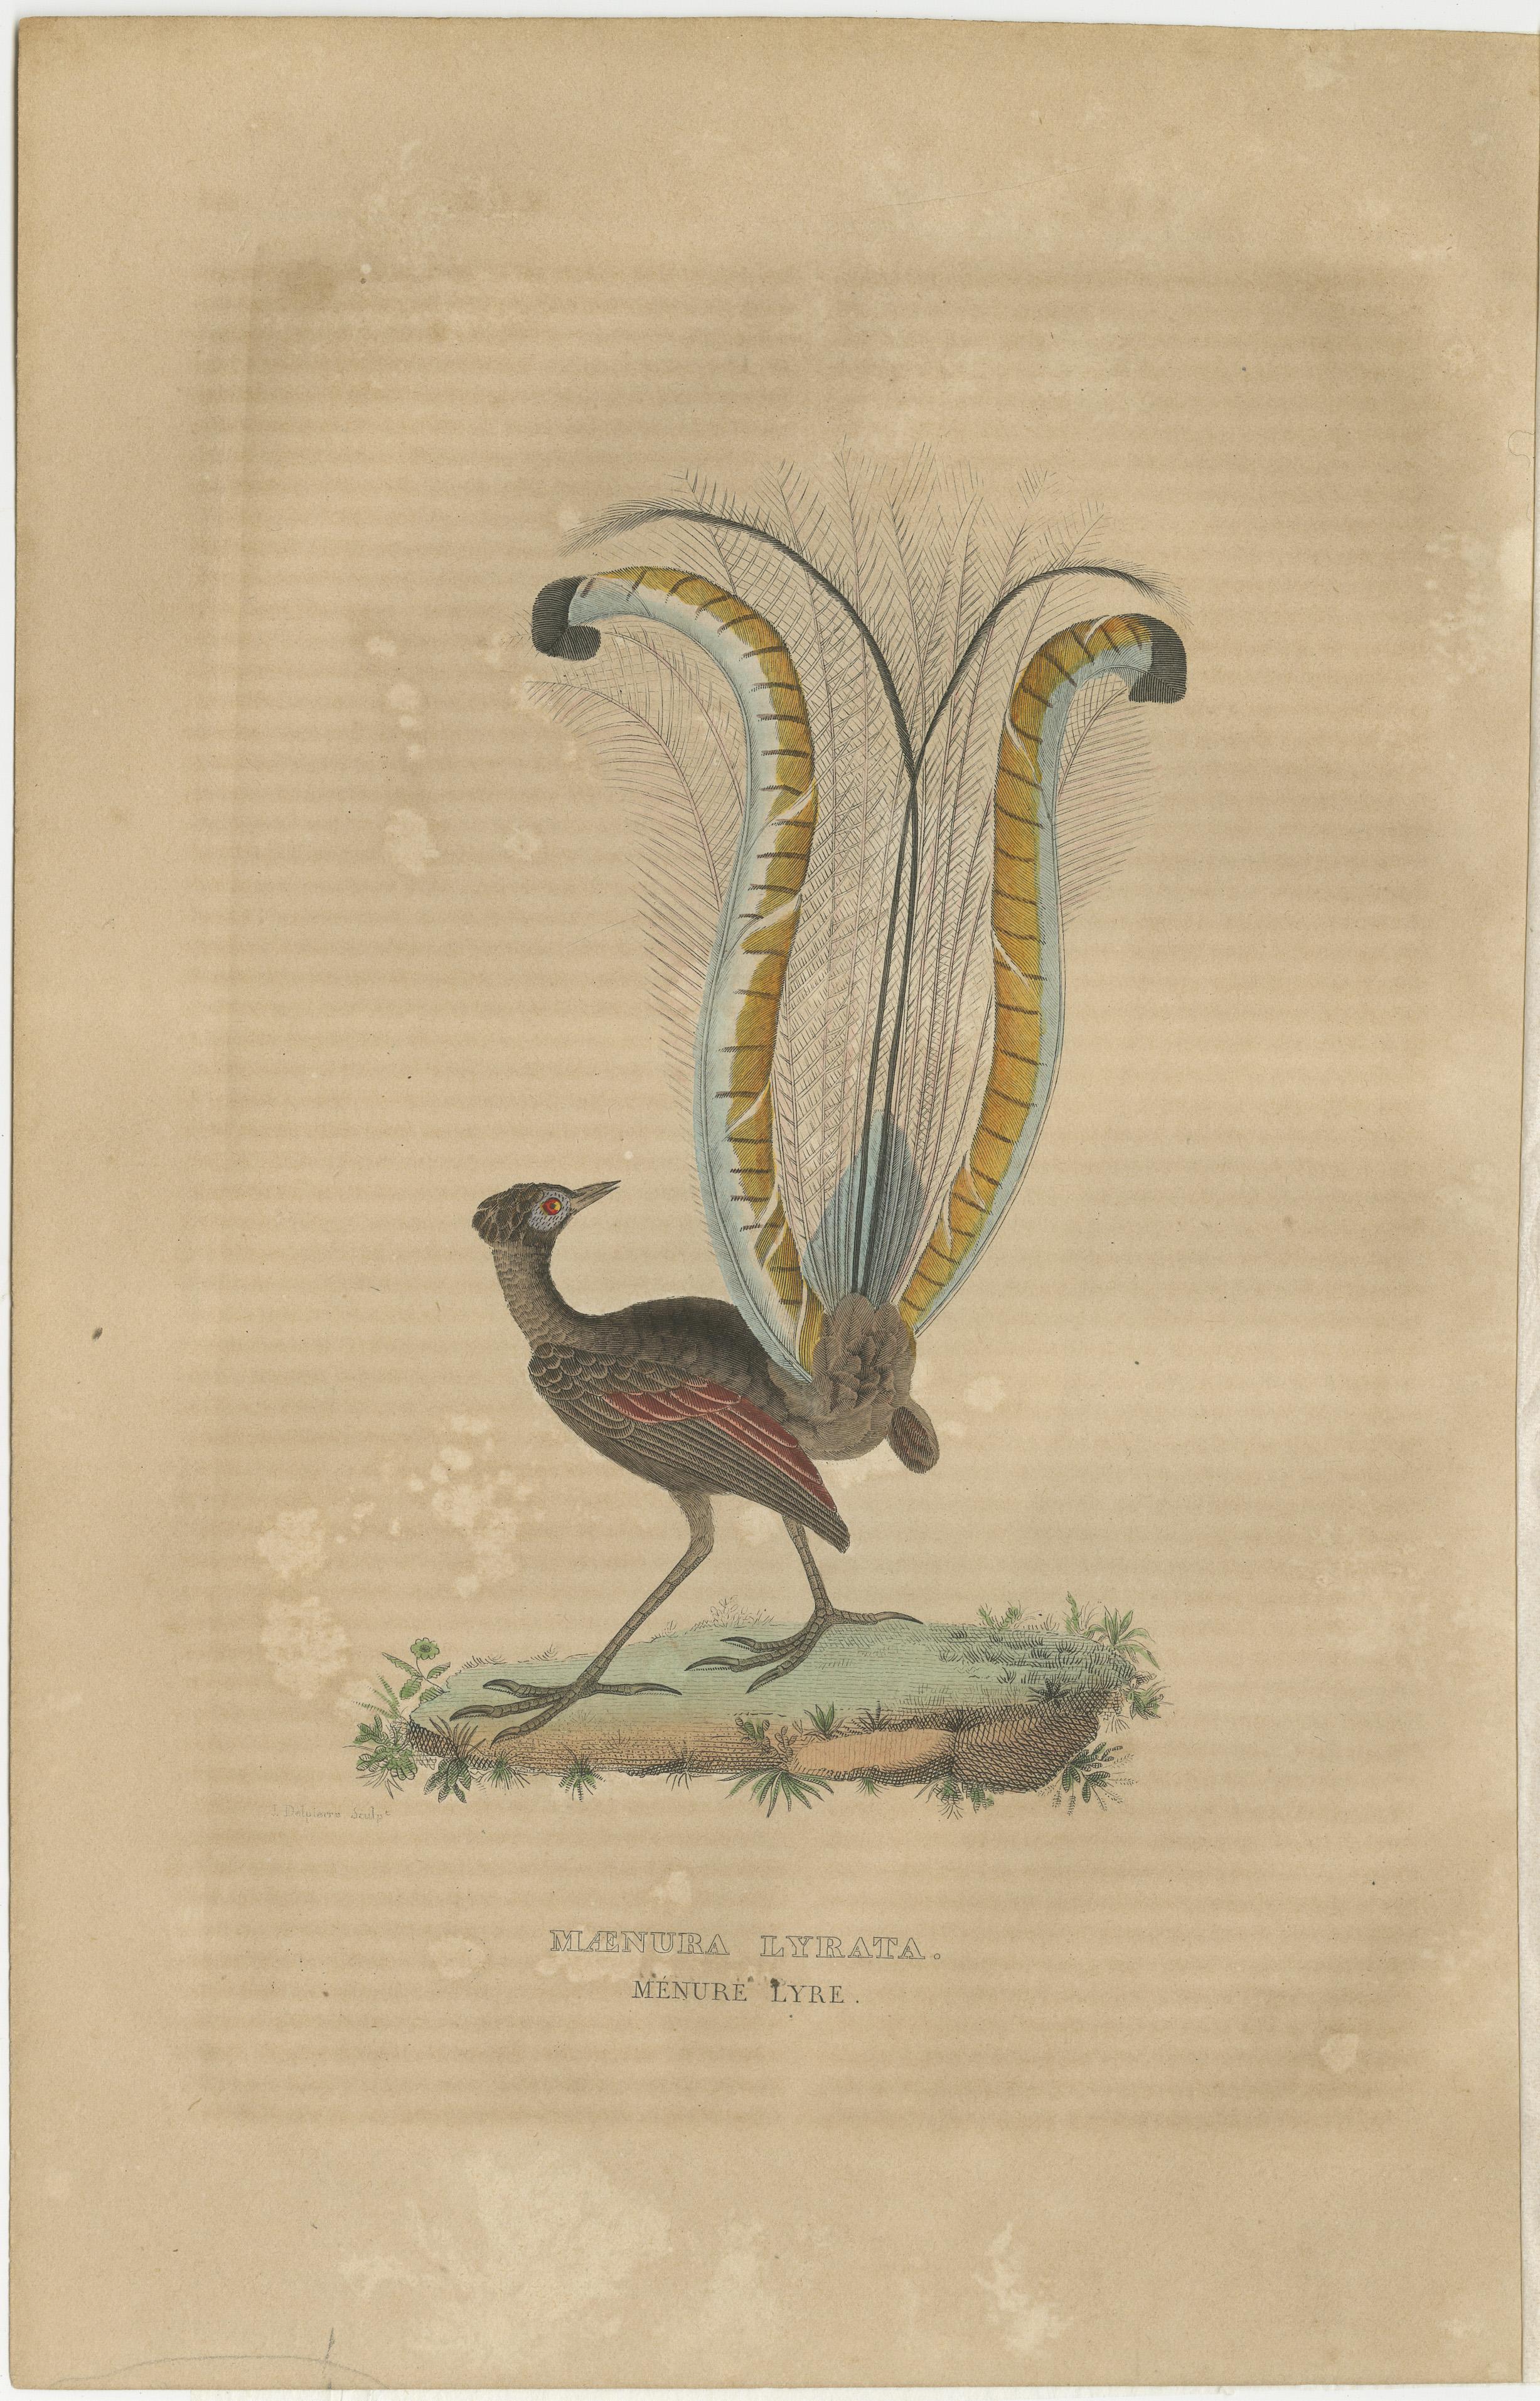 Titre : ''Maenura lyre'' ou ''Menure Lyre'' fait référence à l'oiseau lyre superbe, une espèce d'oiseau fascinante originaire d'Australie, que l'on trouve en particulier dans les forêts du sud-est de l'Australie, y compris certaines parties de